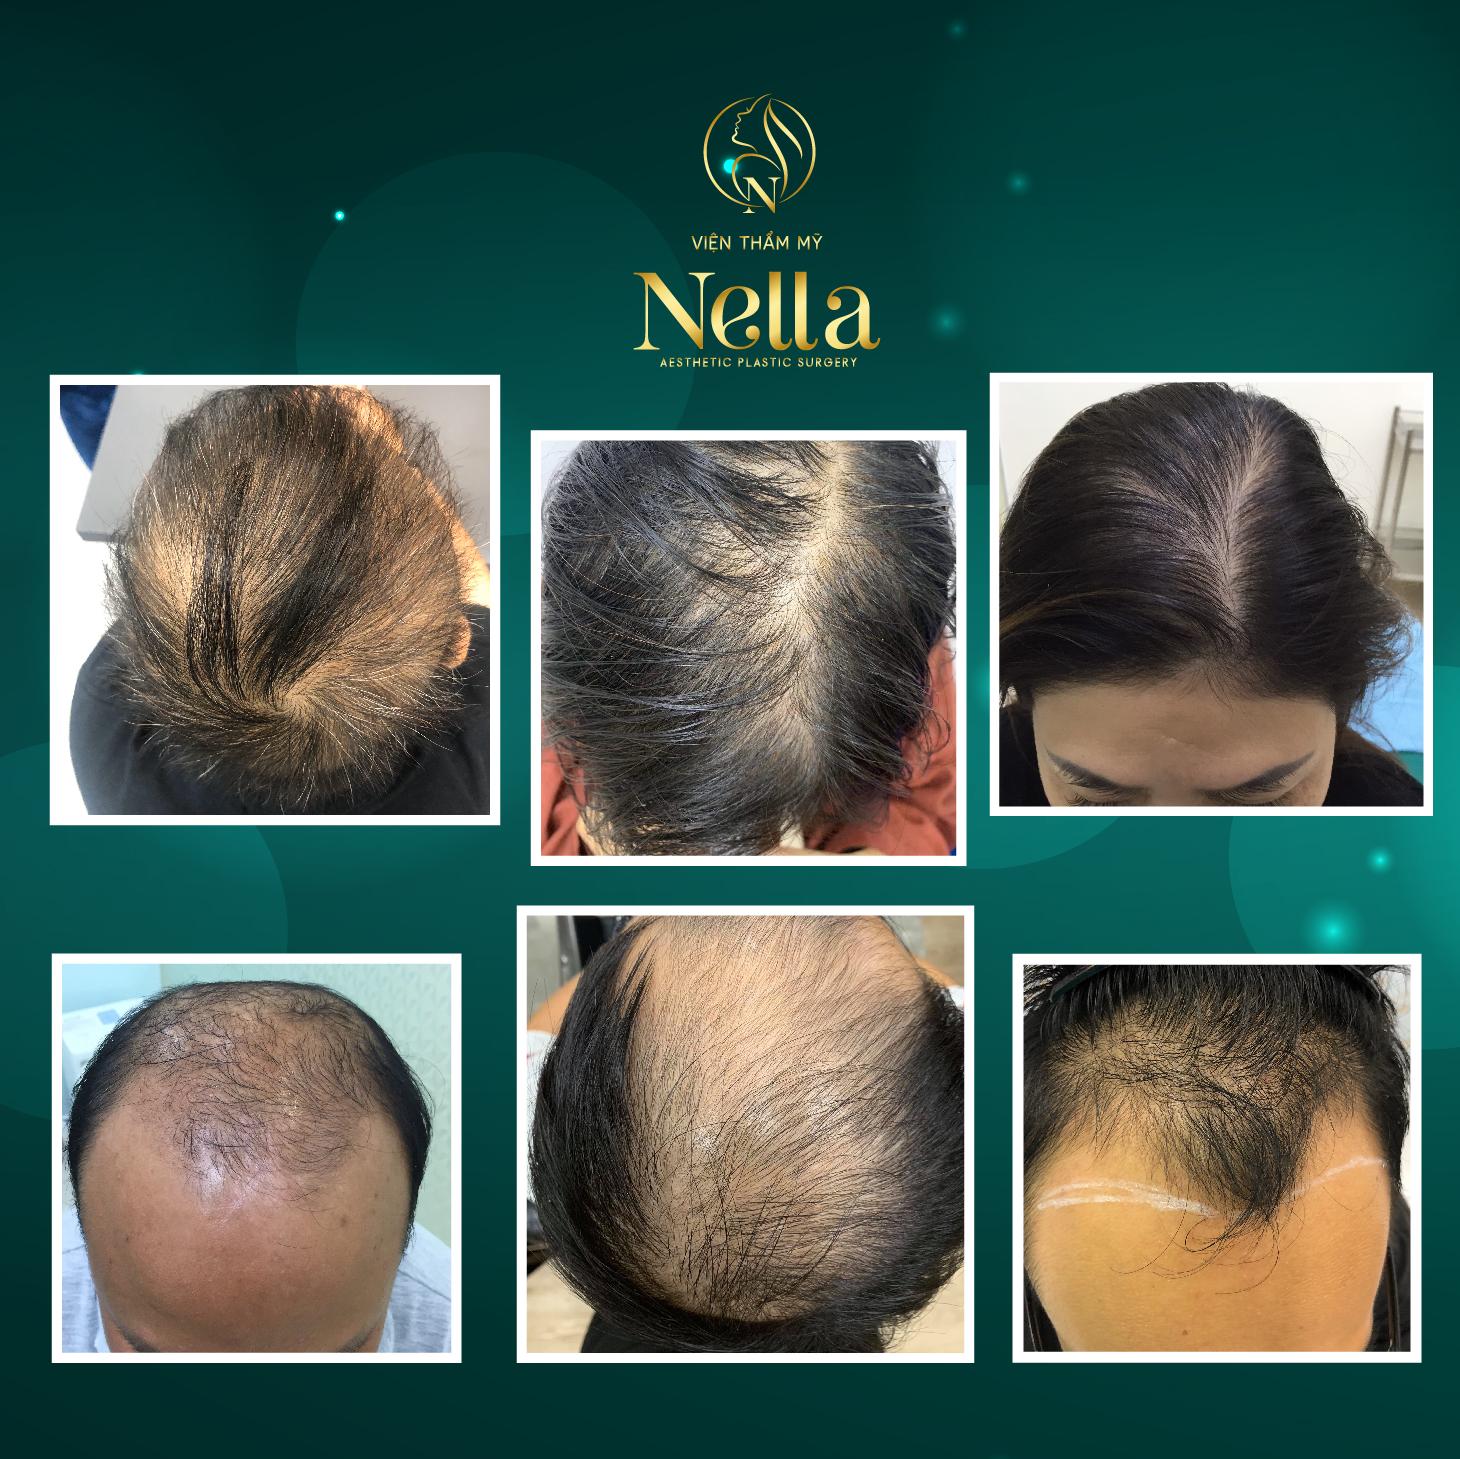 Viện cấy tóc Nella – Địa chỉ cấy tóc TpHCM nhiều người lựa chọn